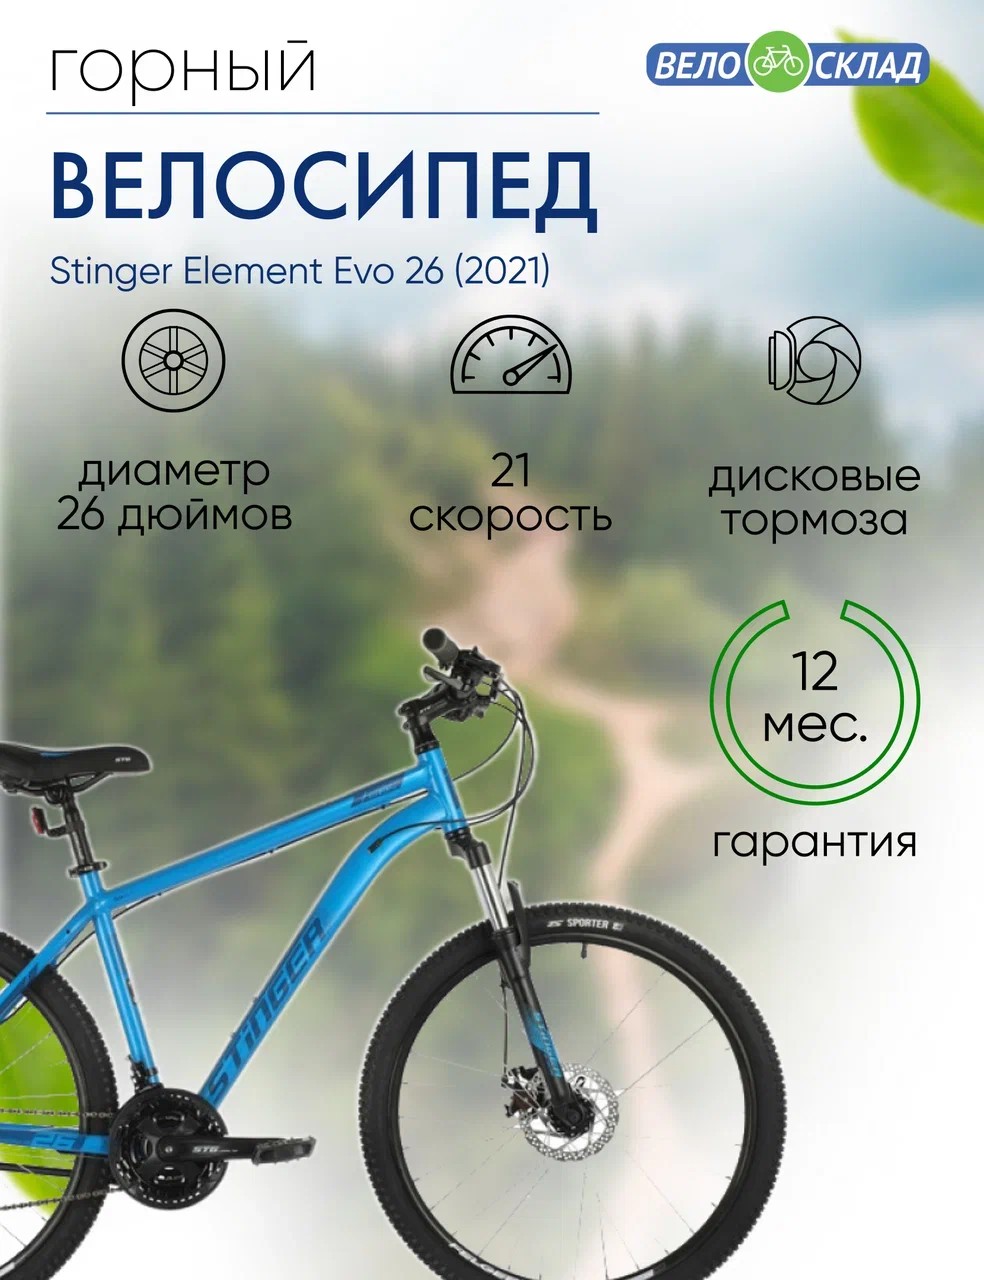 Горный велосипед Stinger Element Evo 26, год 2021, цвет Синий, ростовка 18